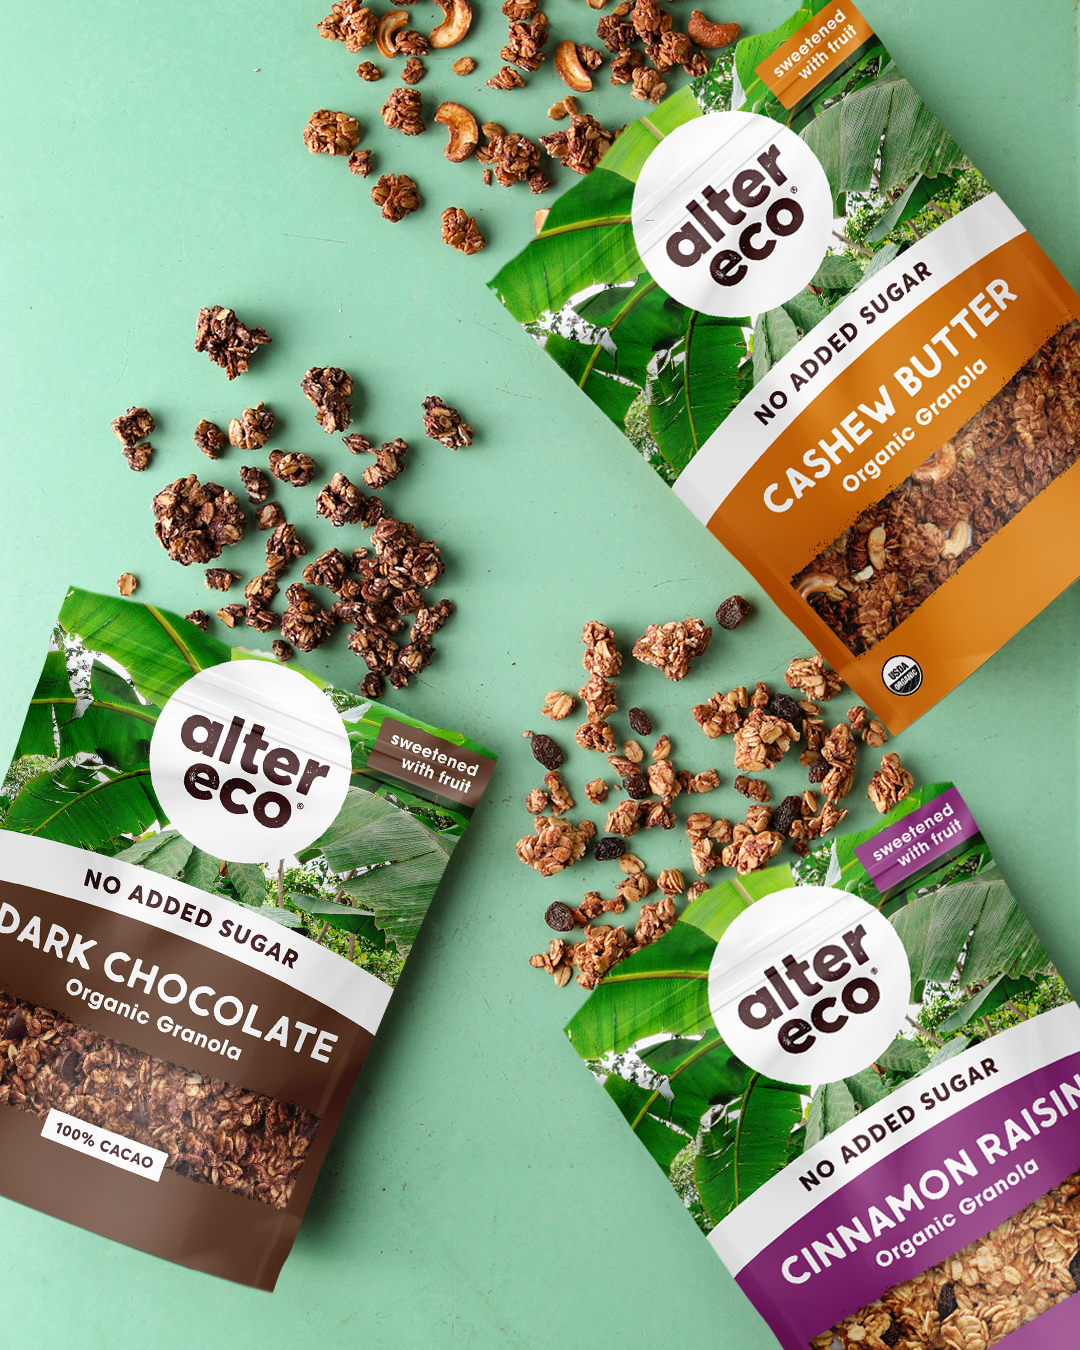 Alter Eco Launches Organic, No Sugar Added Granola